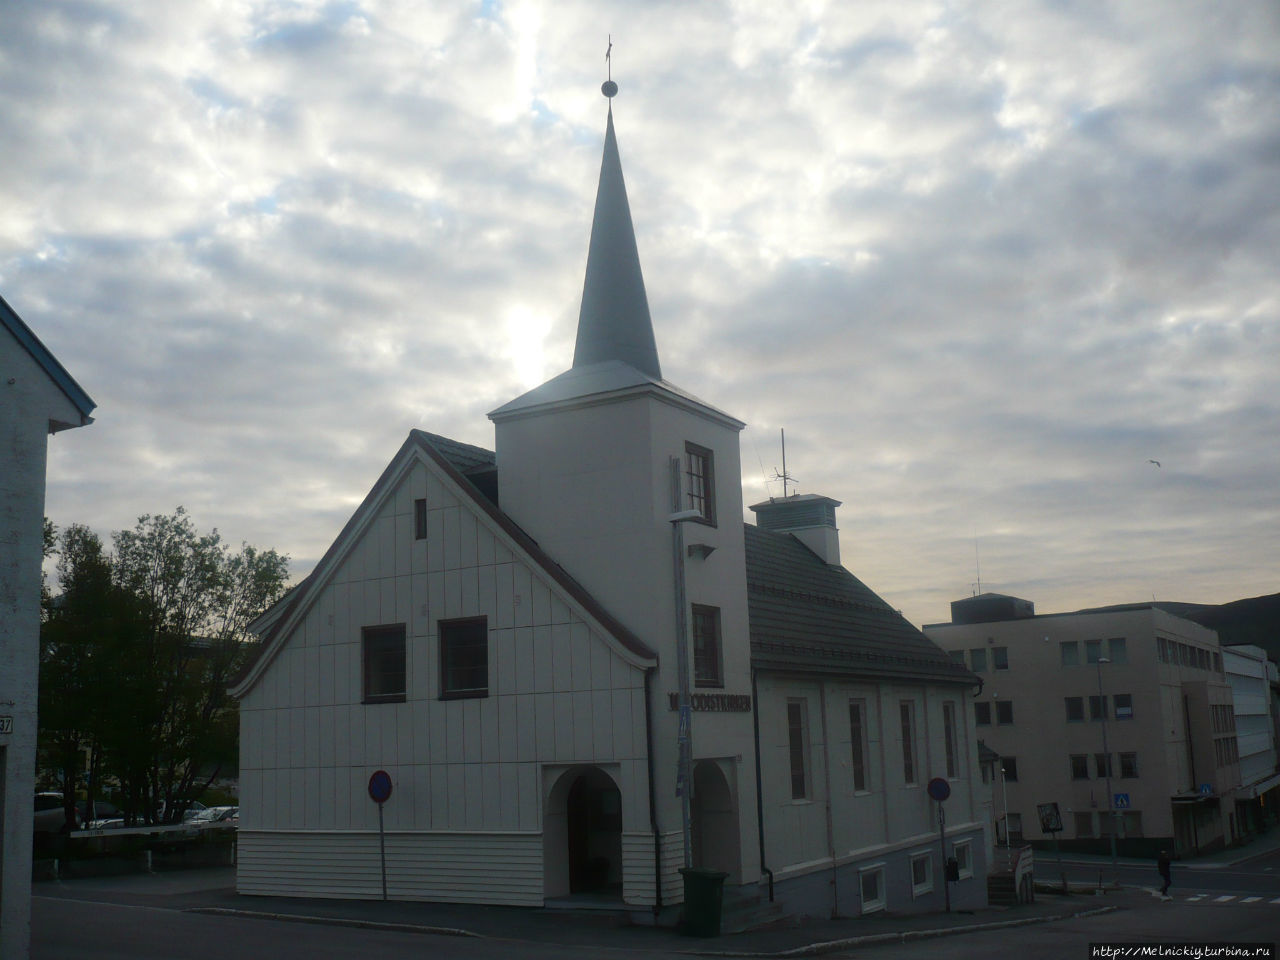 Методистская церковь Хаммерфест, Норвегия